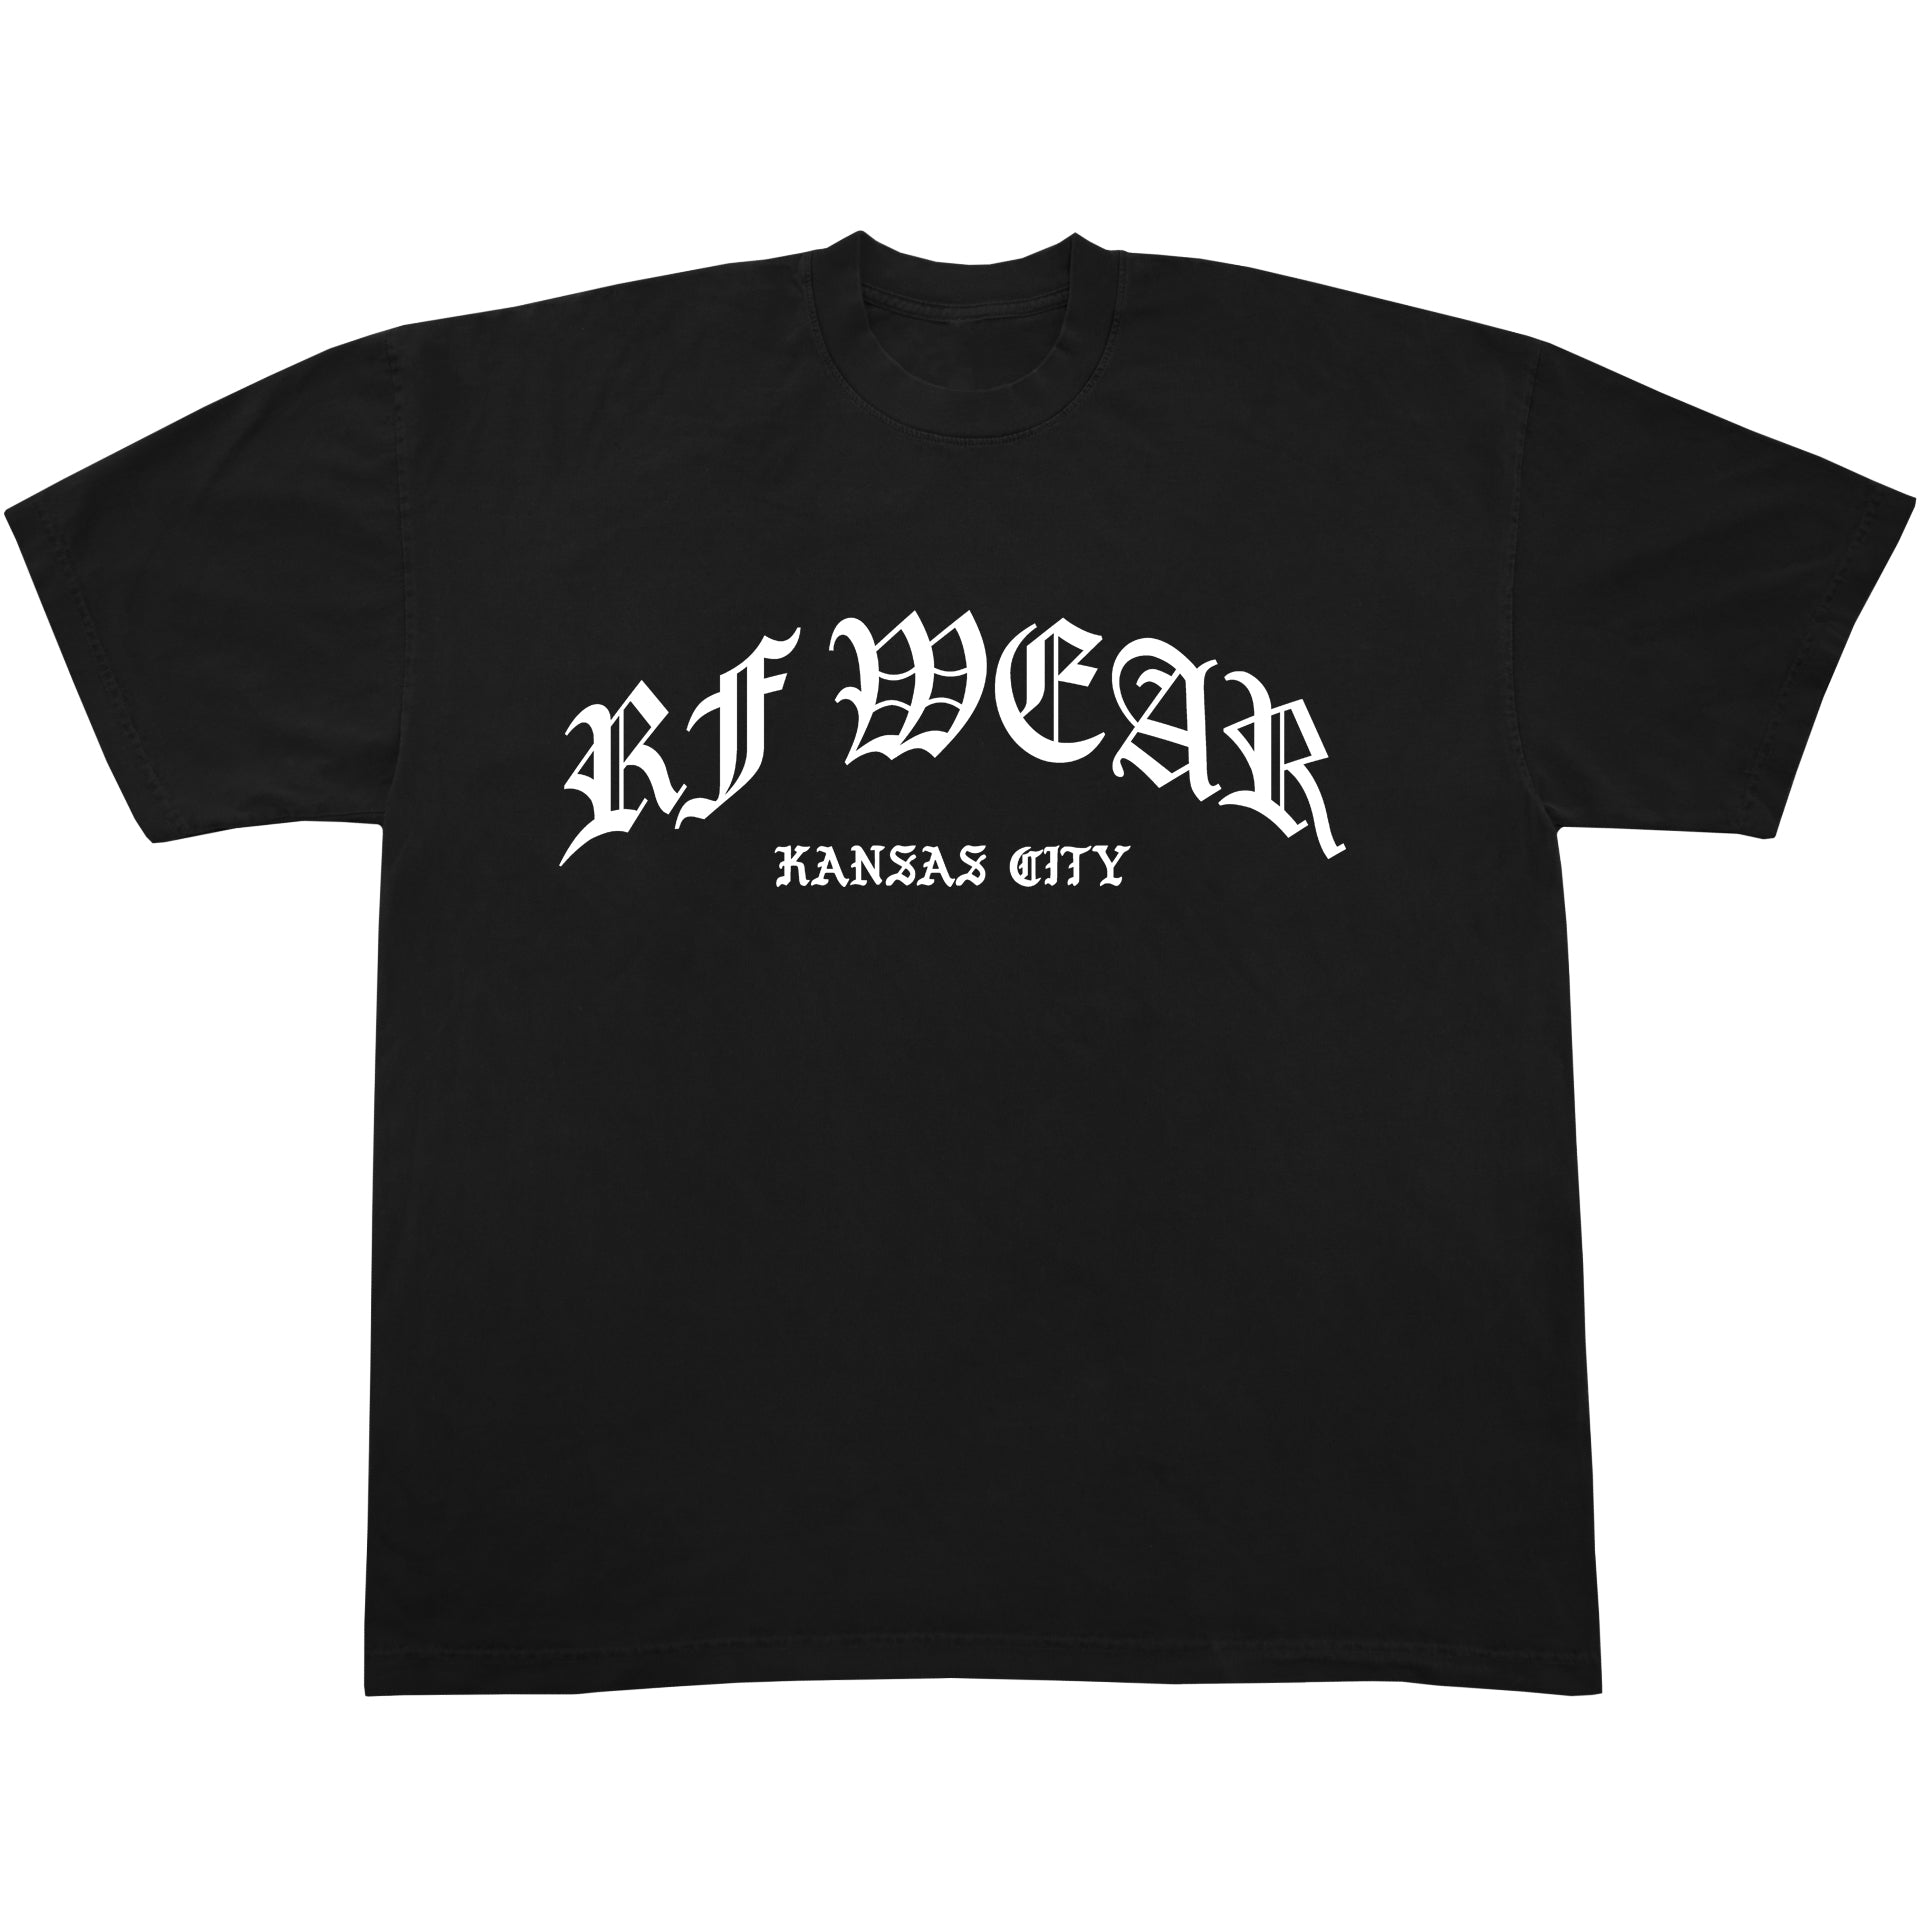 Promo RF Wear Gothic T-Shirt